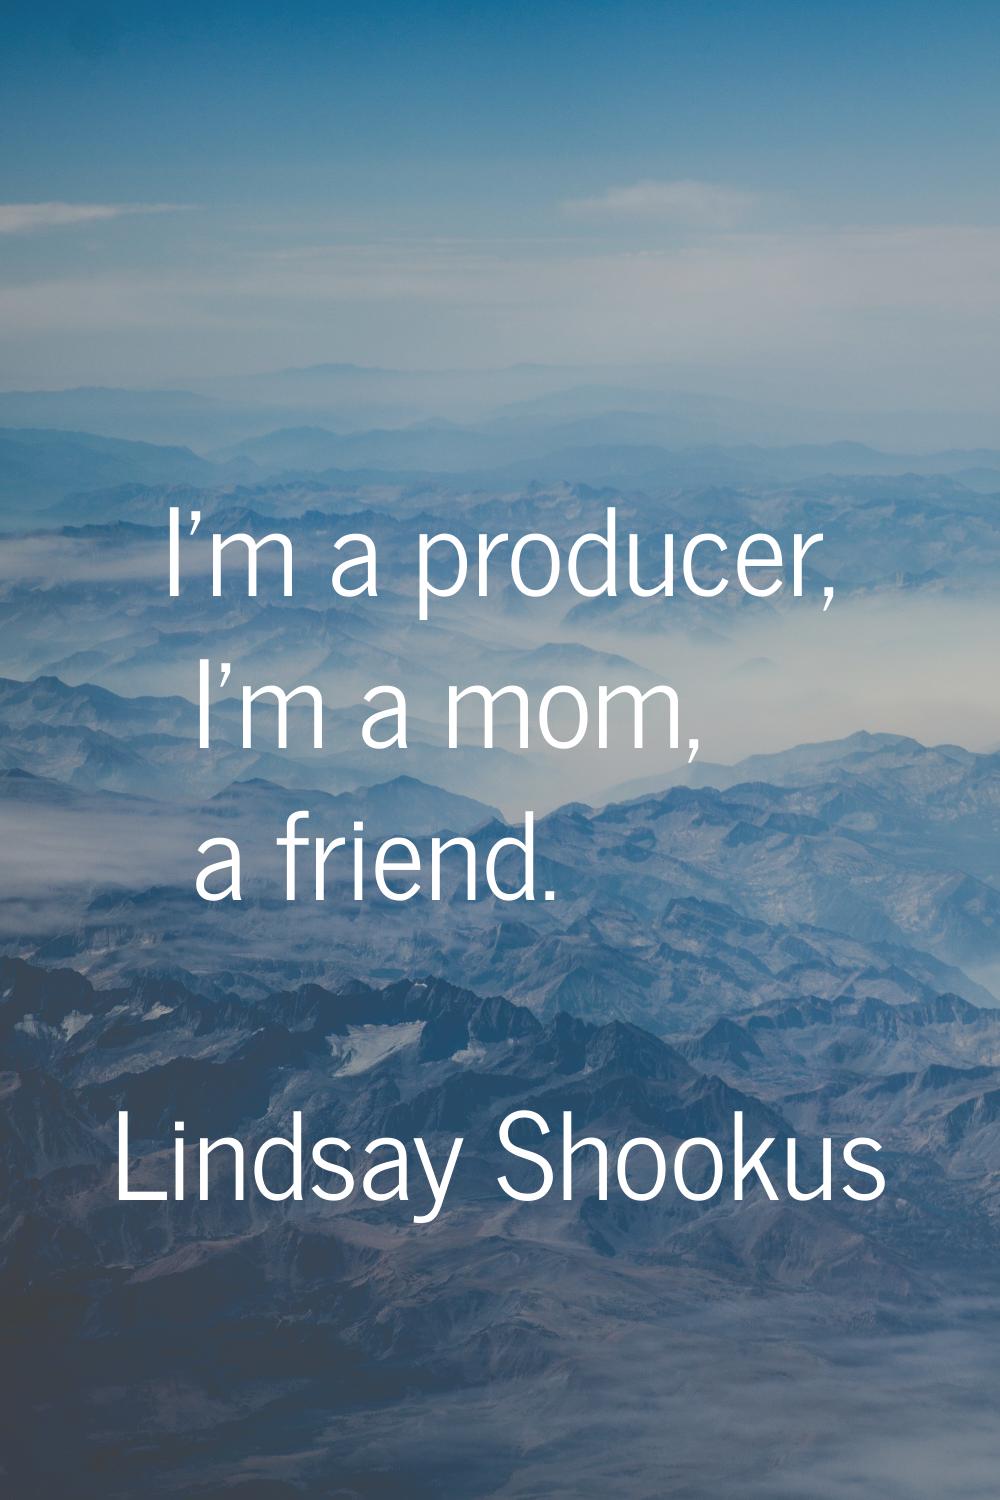 I'm a producer, I'm a mom, a friend.